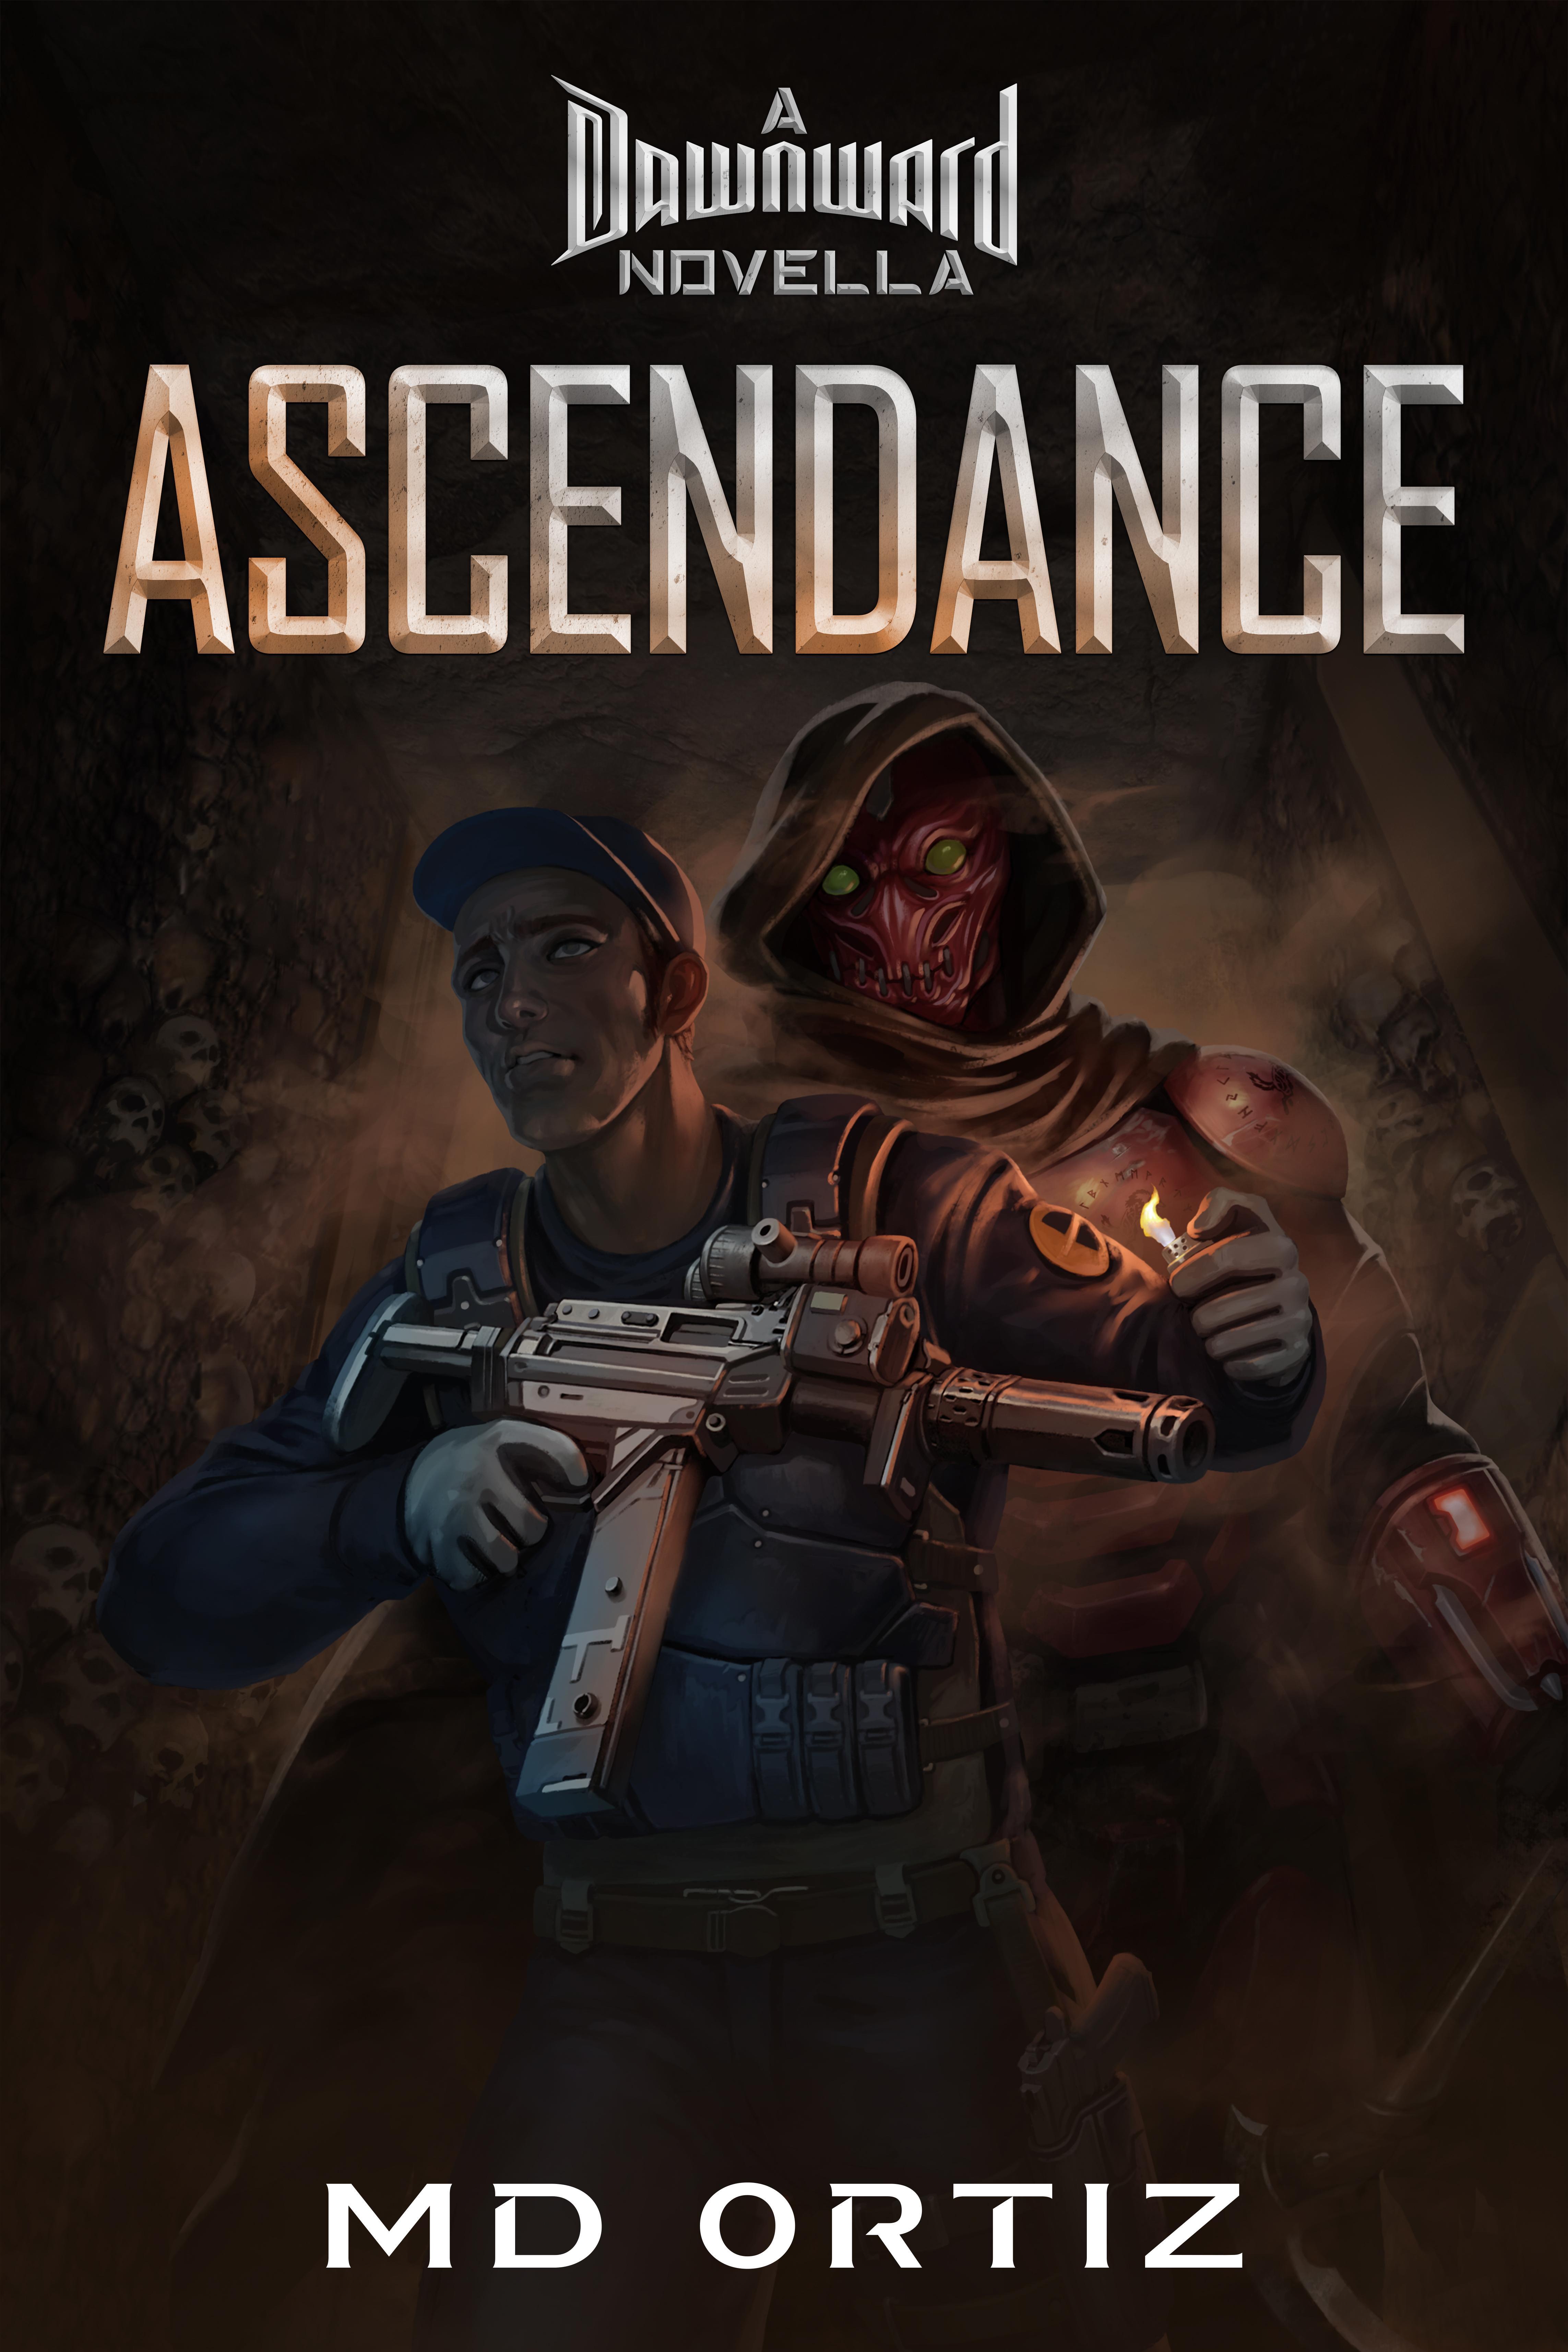 Ascendance: Short Film vs. Novella